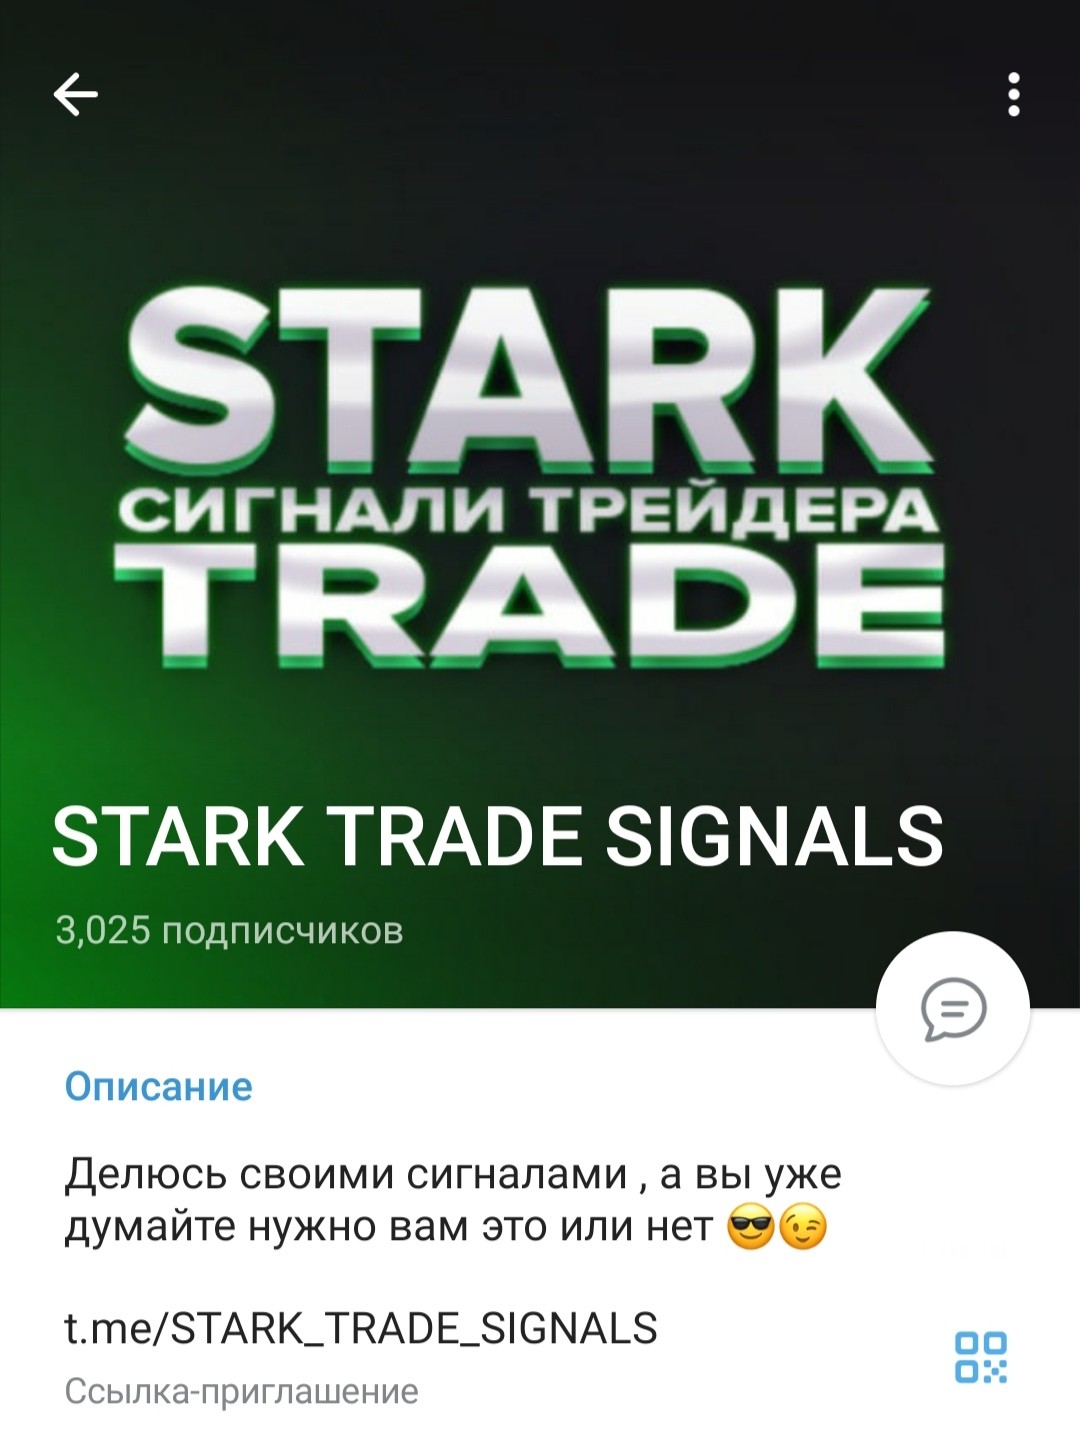 Телеграм канал Stark Trade Signals